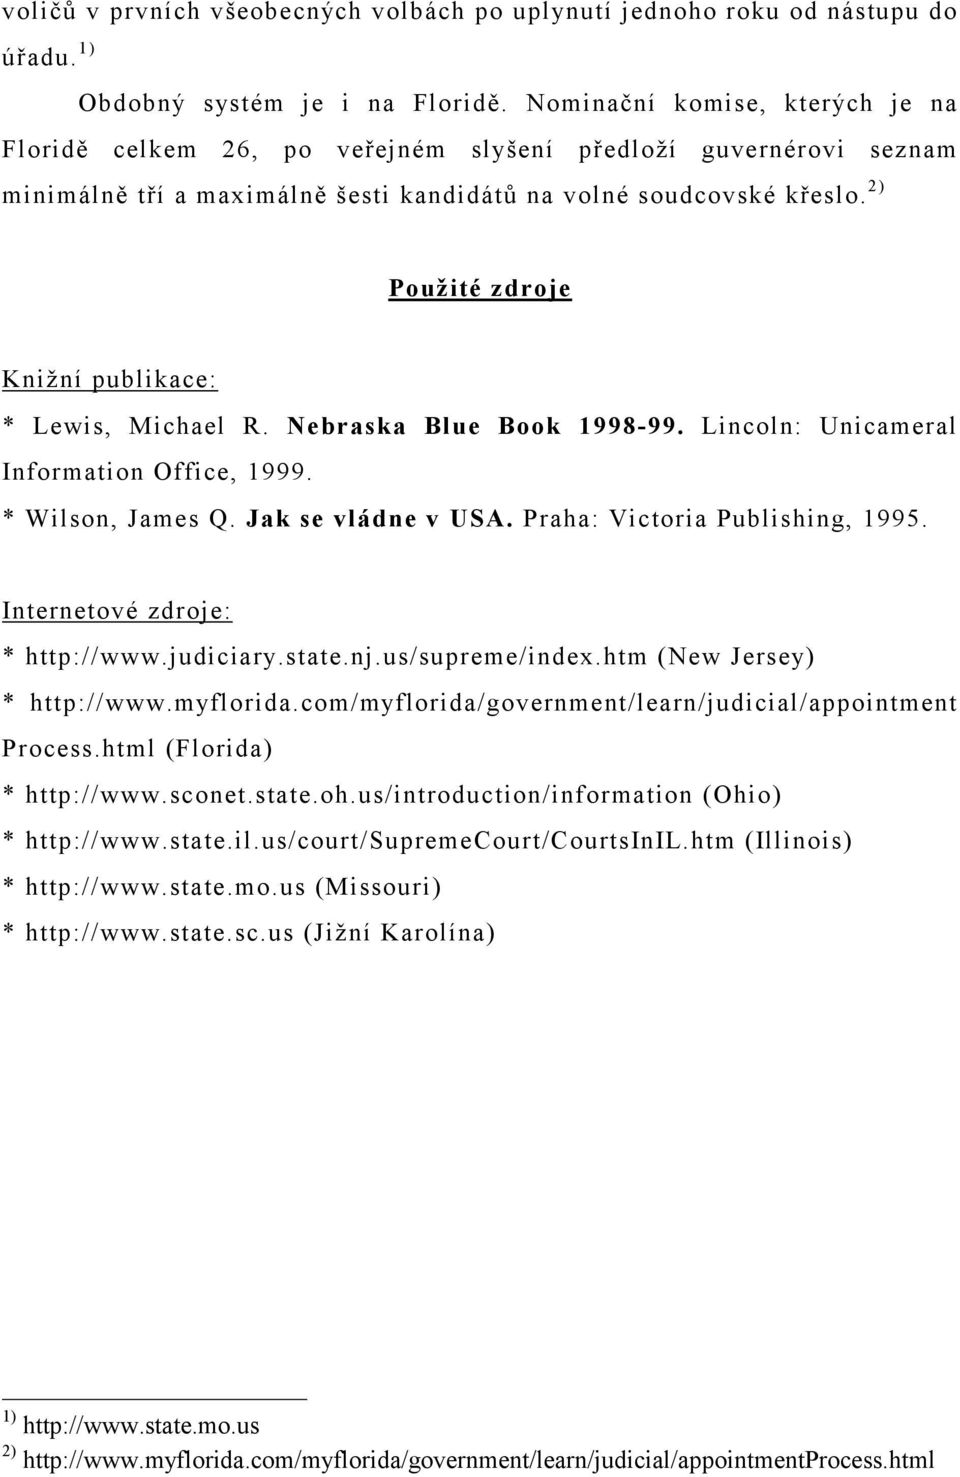 2) Použité zdroje Knižní publikace: * Lewis, Michael R. Nebraska Blue Book 1998-99. Lincoln: Unicameral Information Office, 1999. * Wilson, James Q. Jak se vládne v USA.